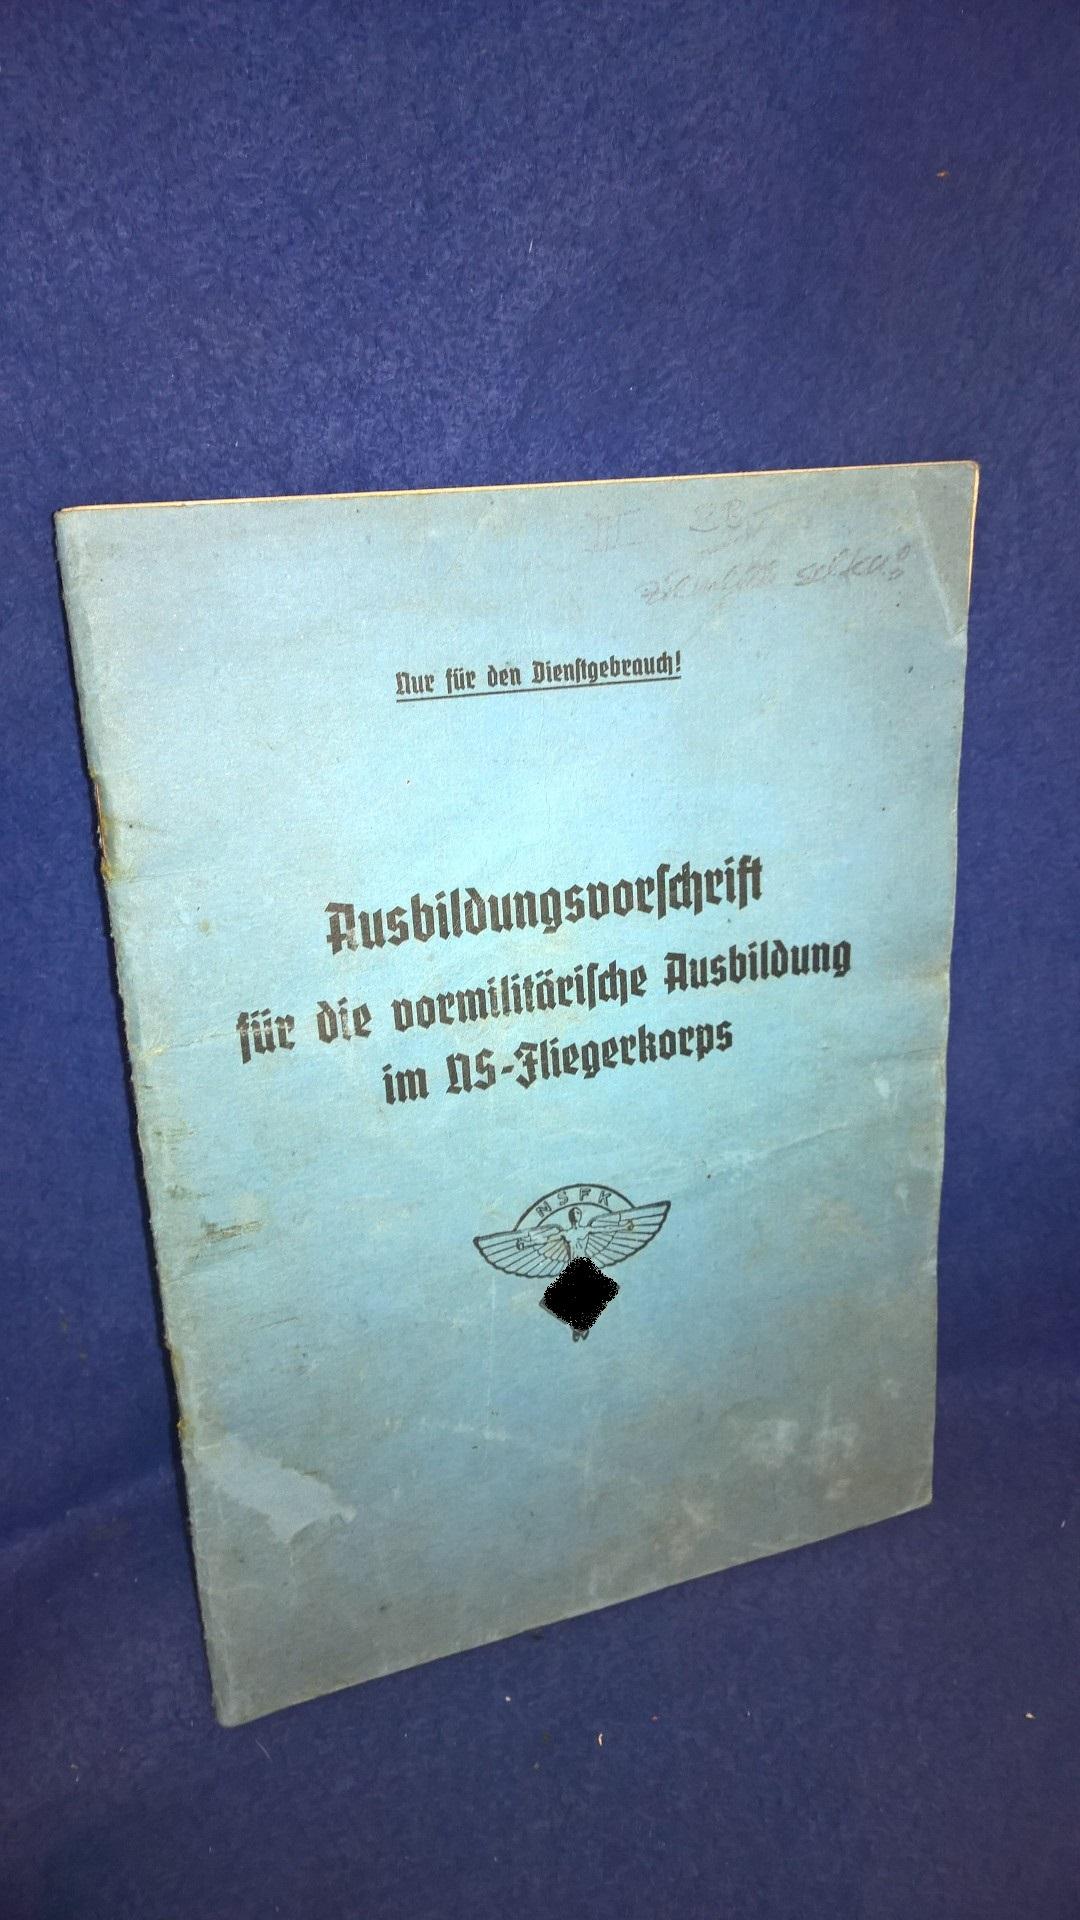 Ausbildungsvorschrift für die vormilitärische Ausbildung im NS-Fliegerkorps.